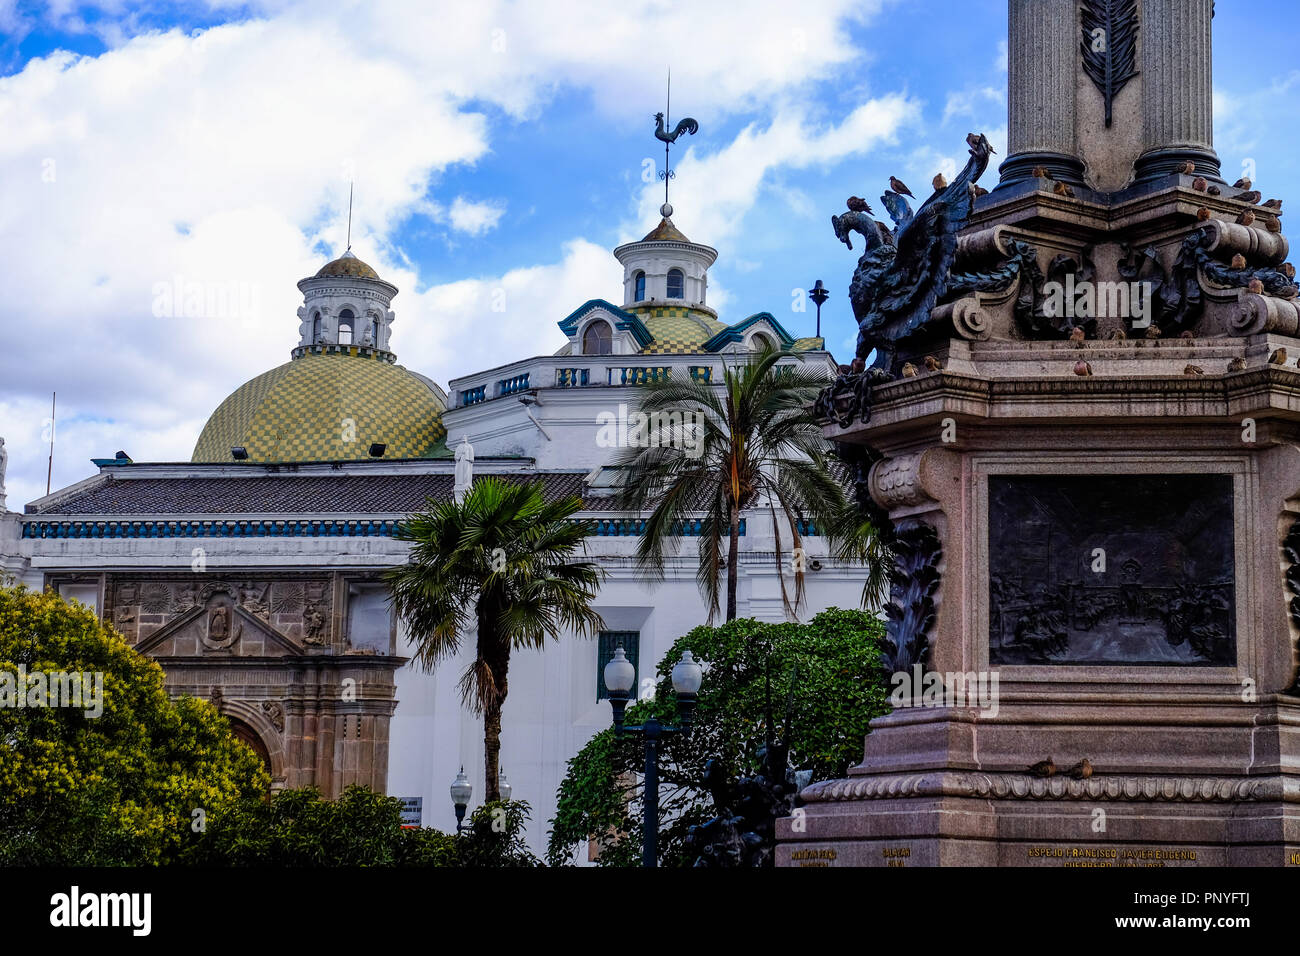 Architecture of Quito, Ecuador Stock Photo